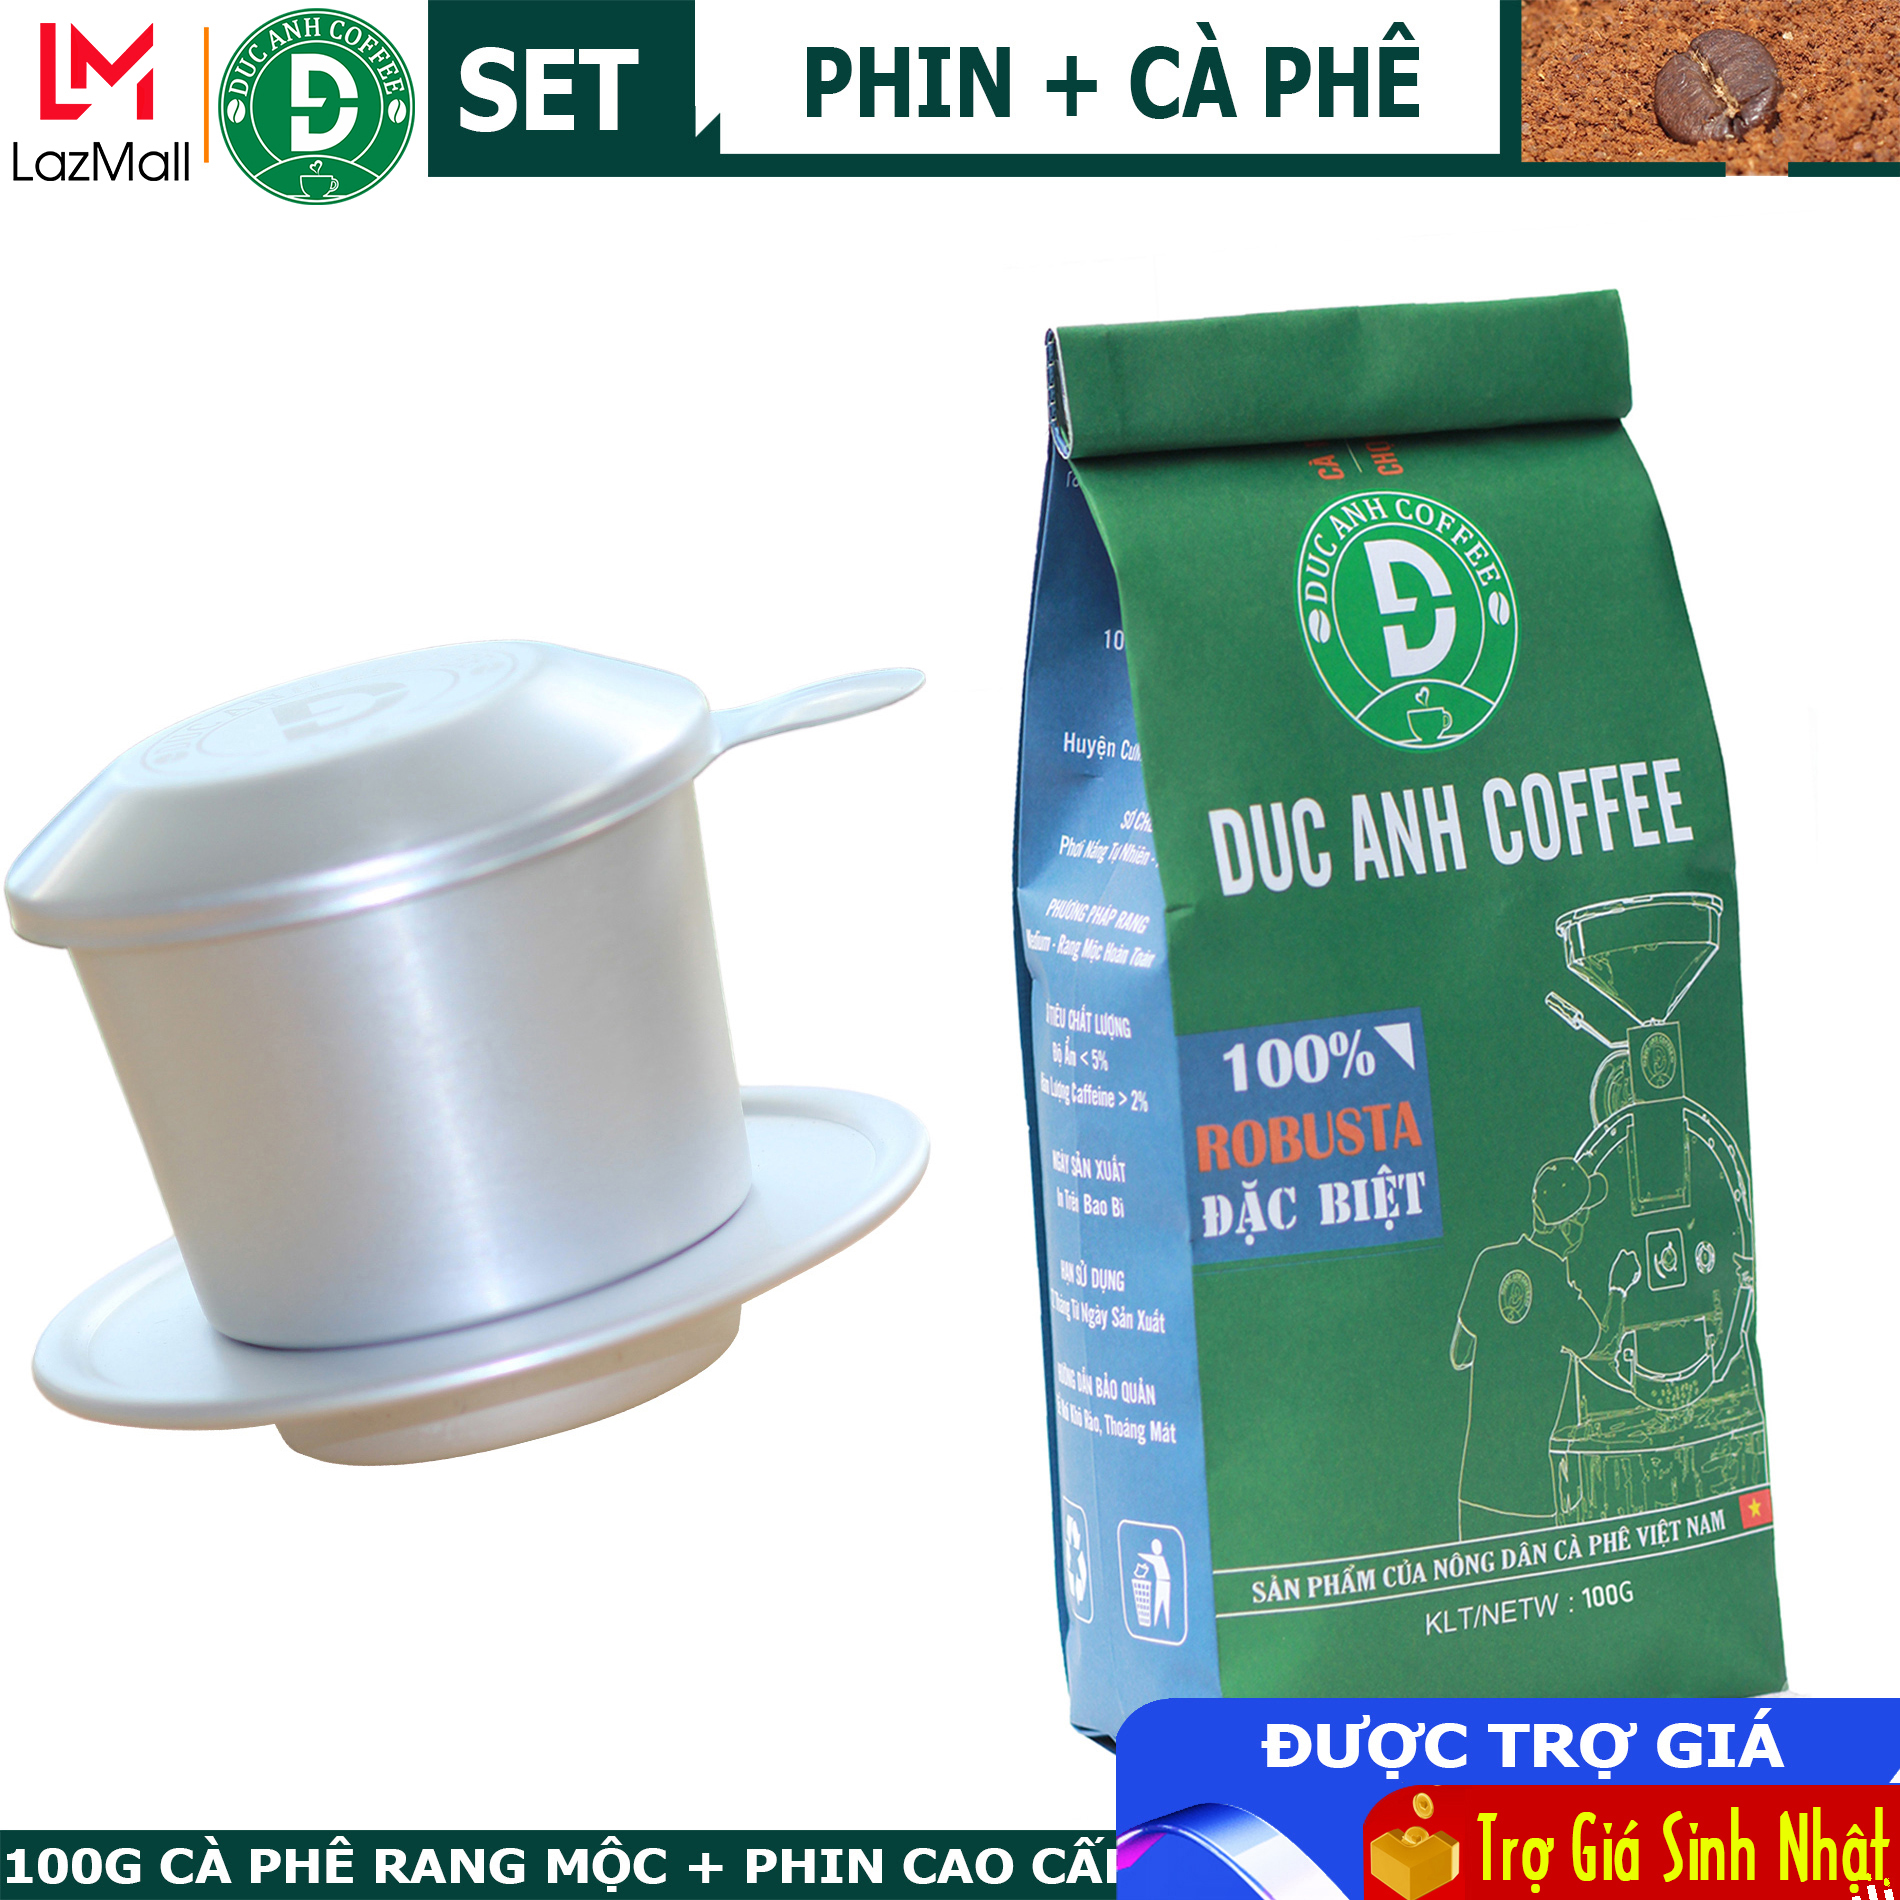 Phin nhôm cao cấp + 100g Cà phê rang xay Đặc Biệt nguyên chất Pha Phin đậm